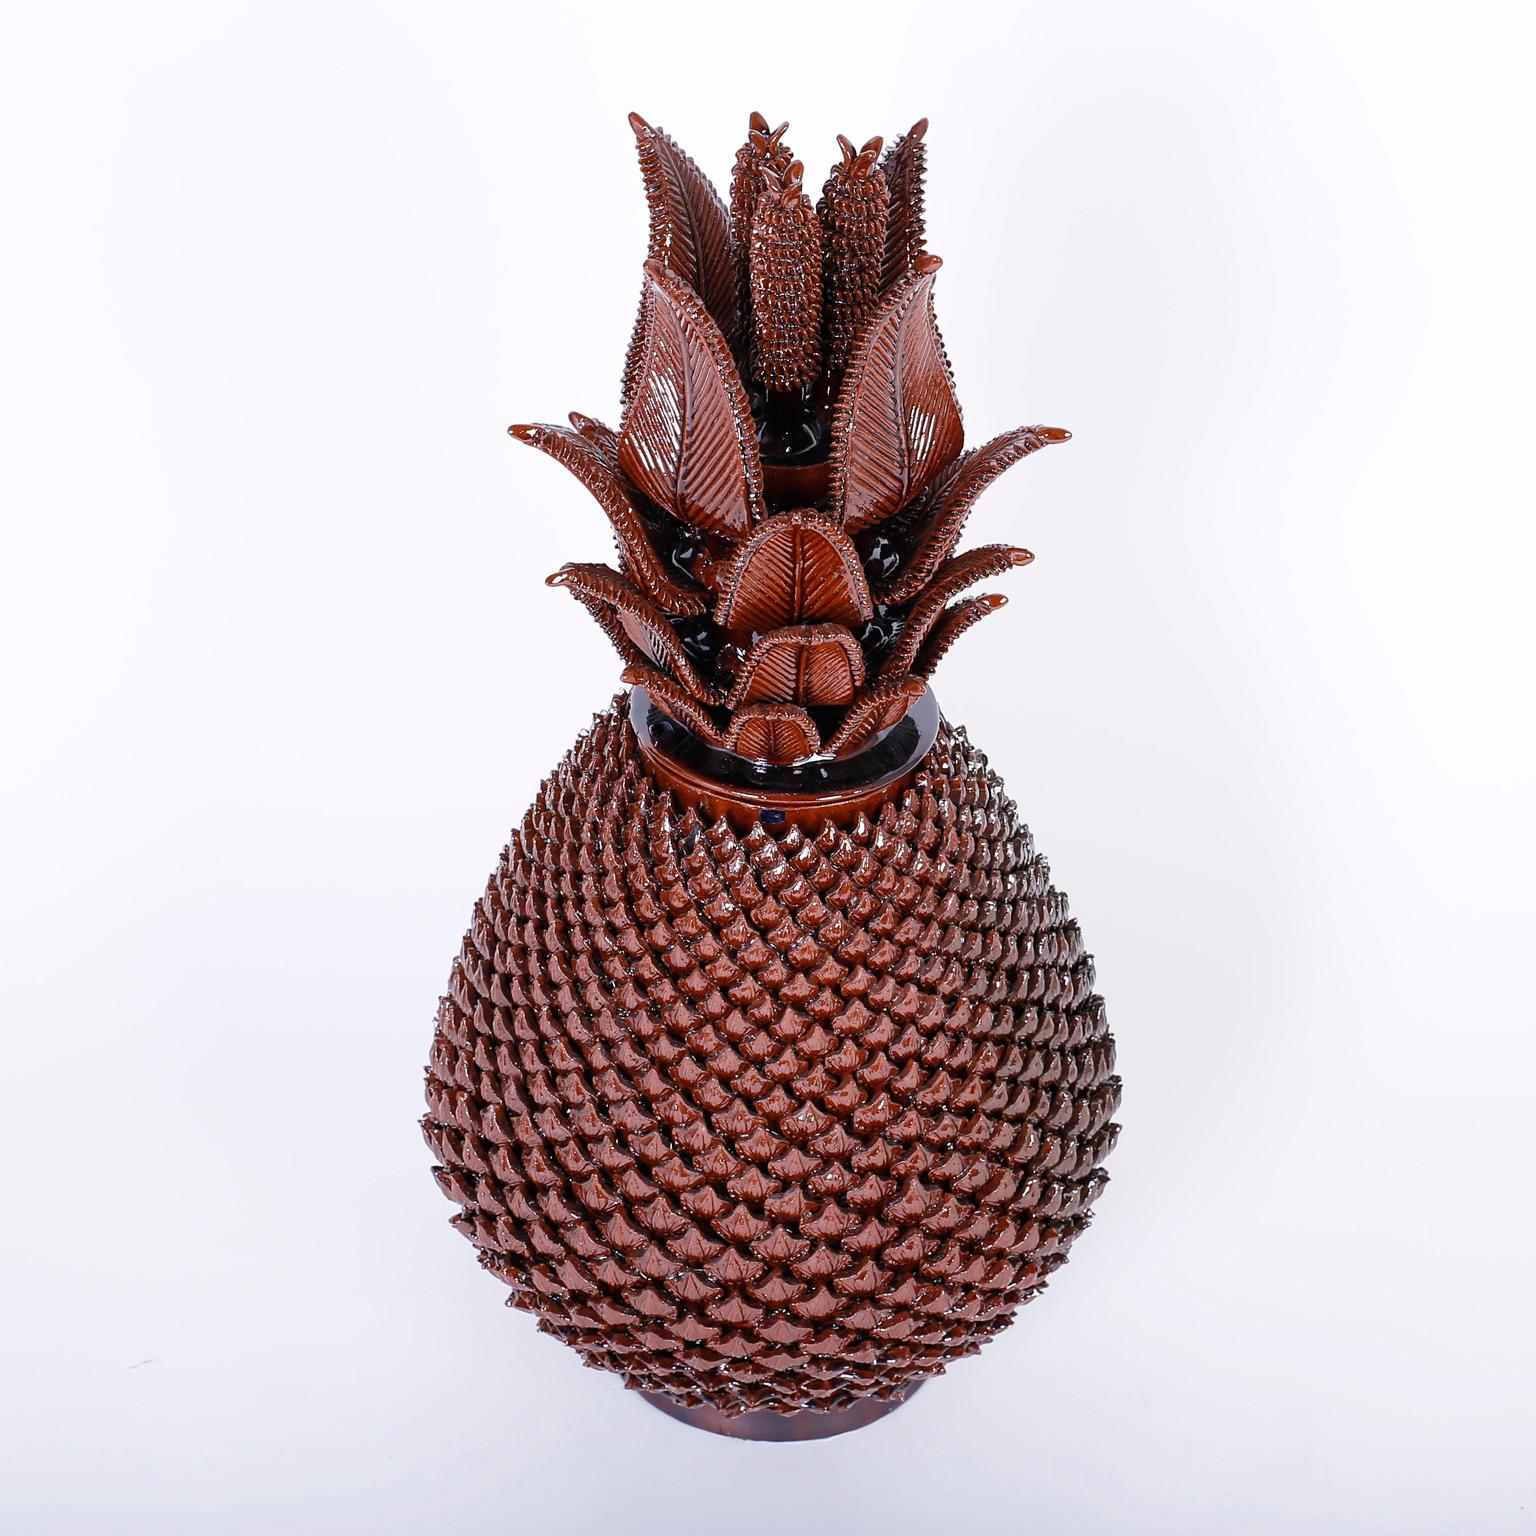 Urne à couvercle en forme d'ananas en terre cuite émaillée brune, avec une impressionnante démonstration de prouesses de poterie, présentant un couvercle spectaculaire en forme de feuille et de cône sur un ambitieux motif de coque répété sur la